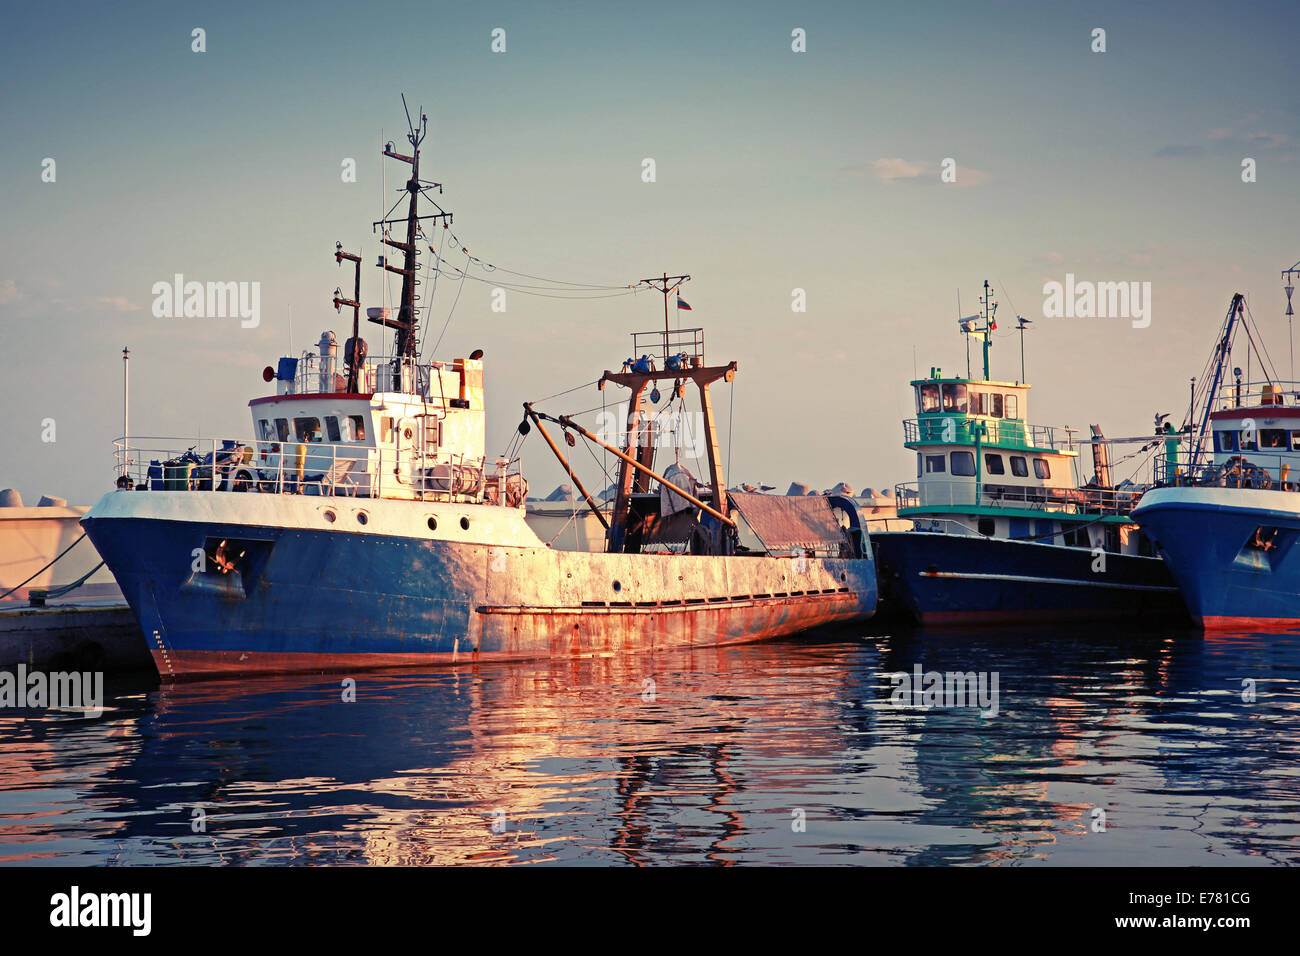 Industrielle Fischerboote sind im Hafen festgemacht. Vintage getönten Foto Stockfoto